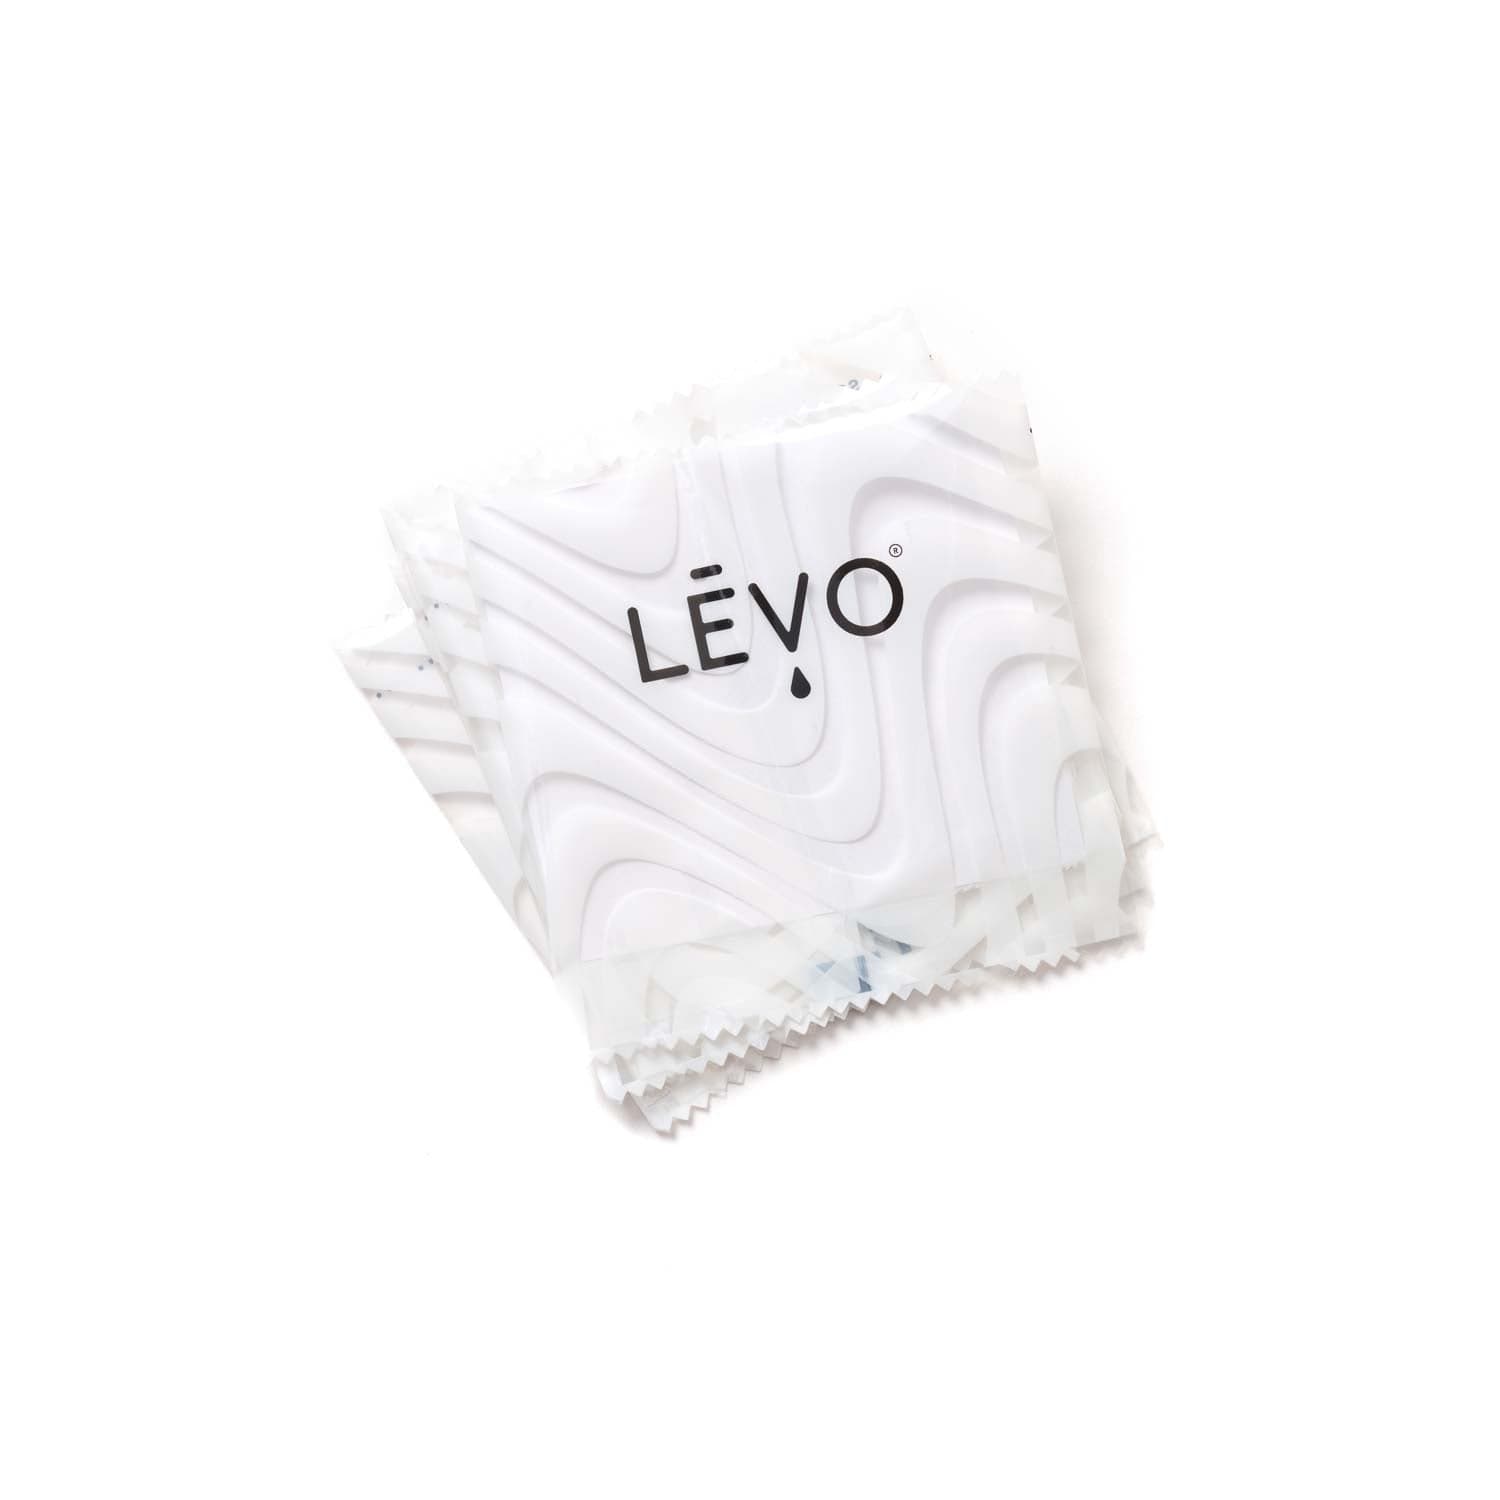 LEVO oil wrap refills small in white